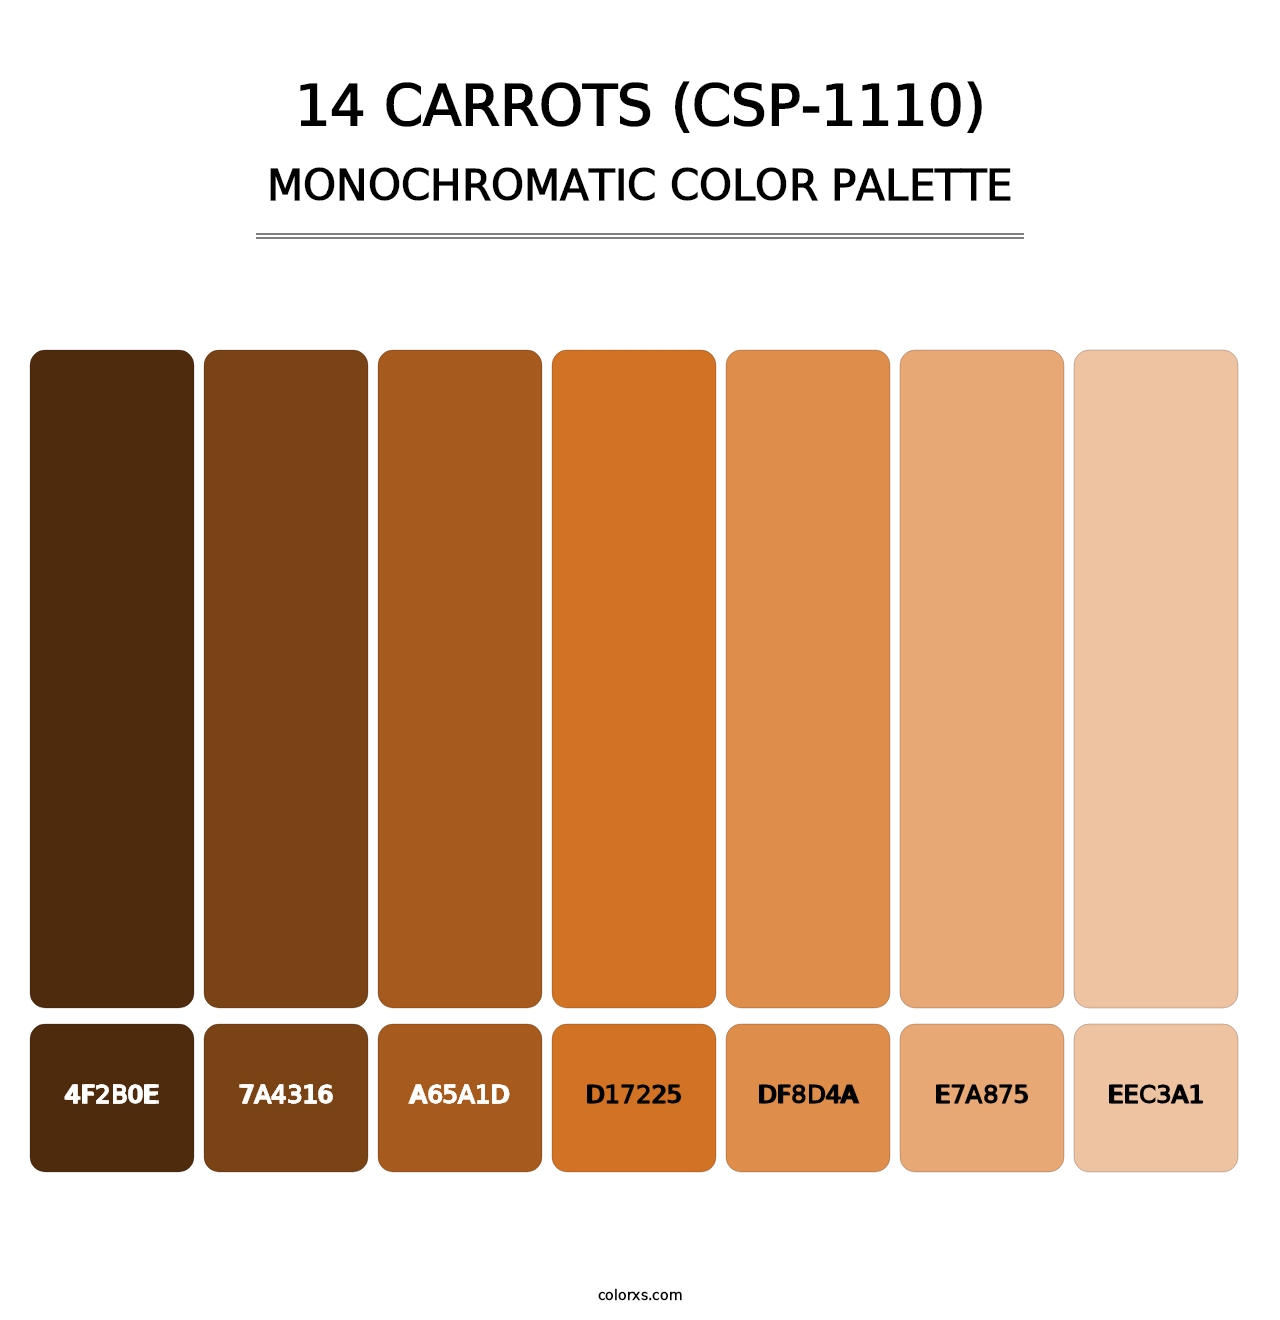 14 Carrots (CSP-1110) - Monochromatic Color Palette